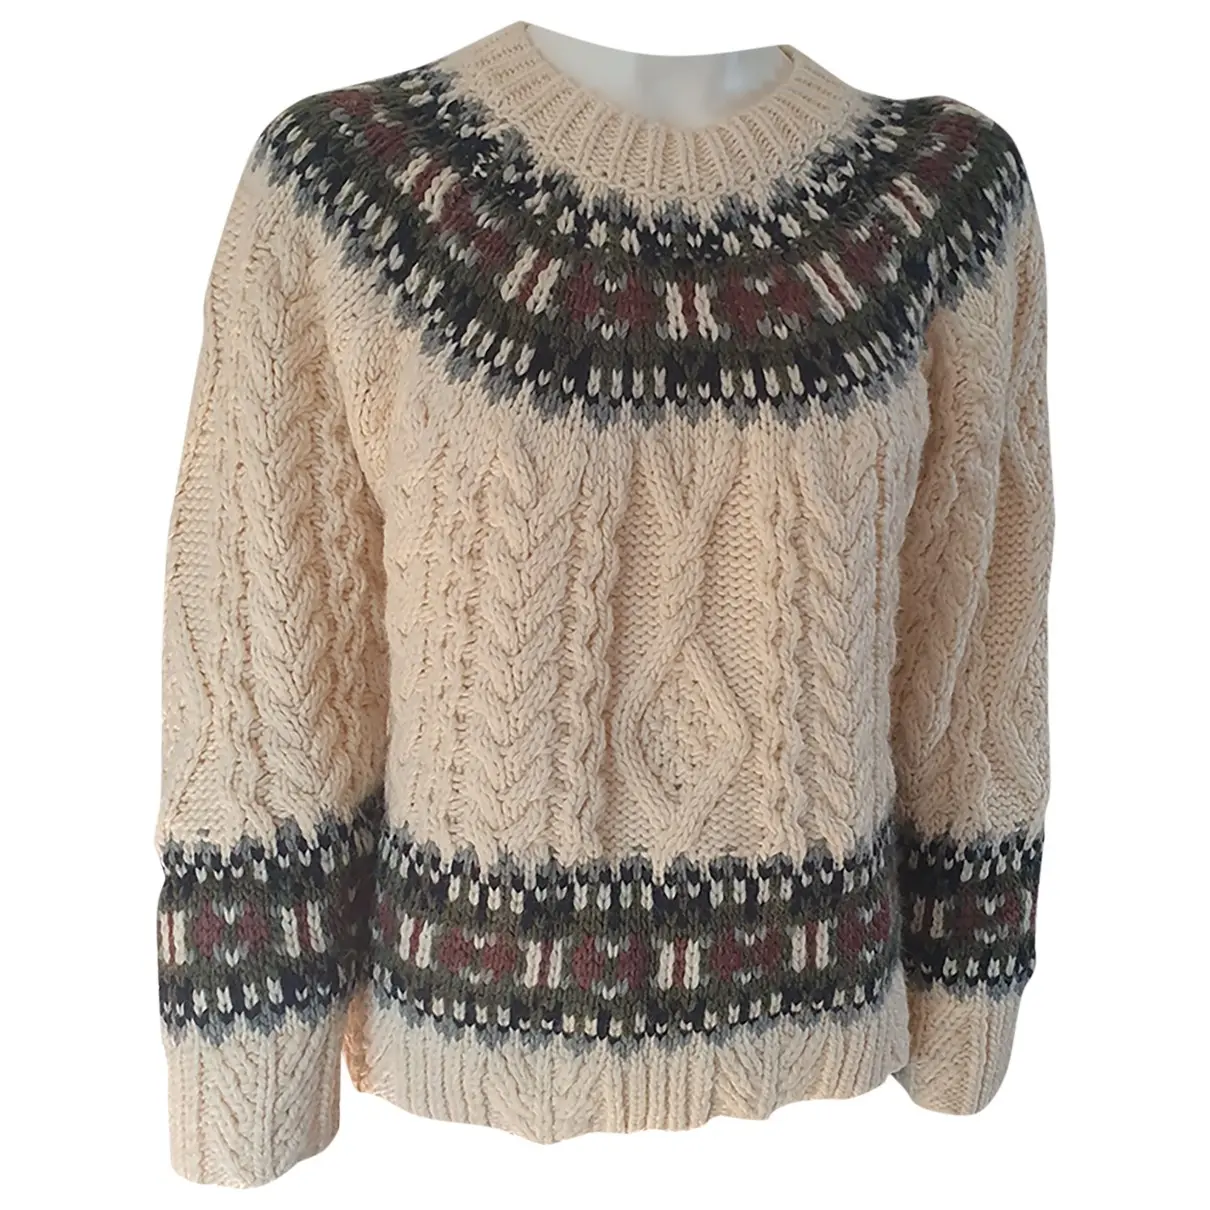 Wool jumper Zara